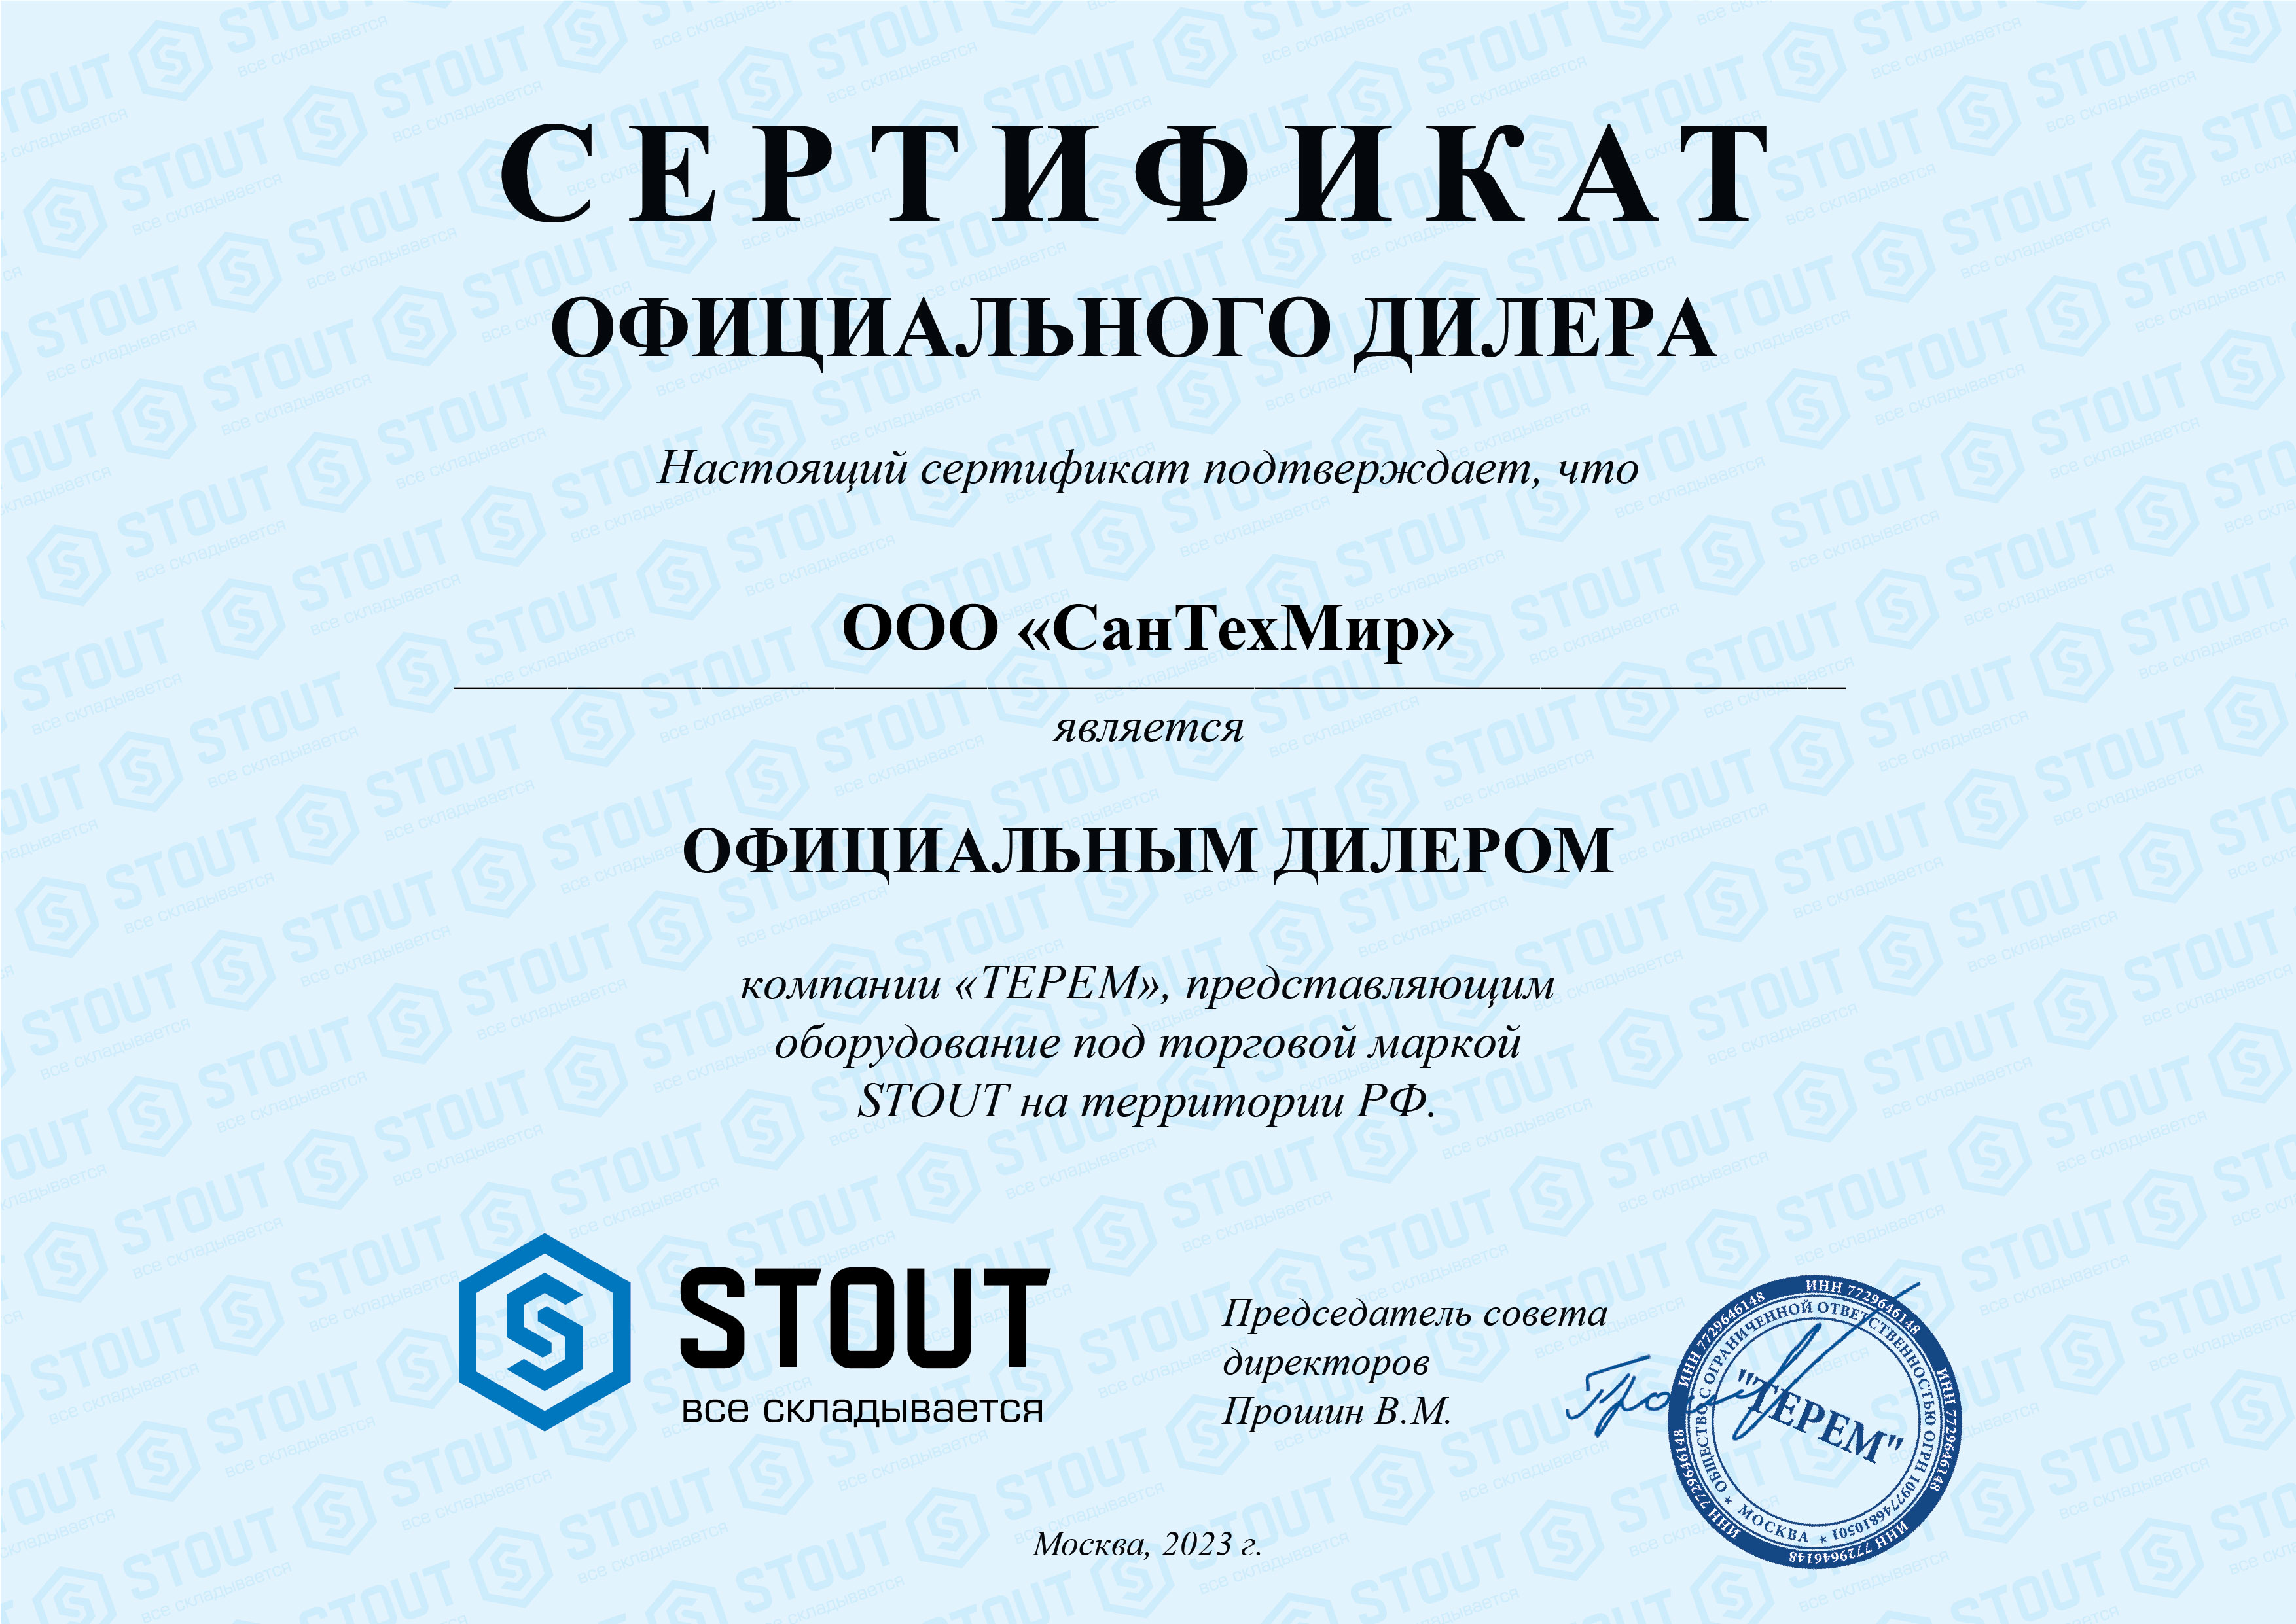 Stout (сертификат за 2023 год)